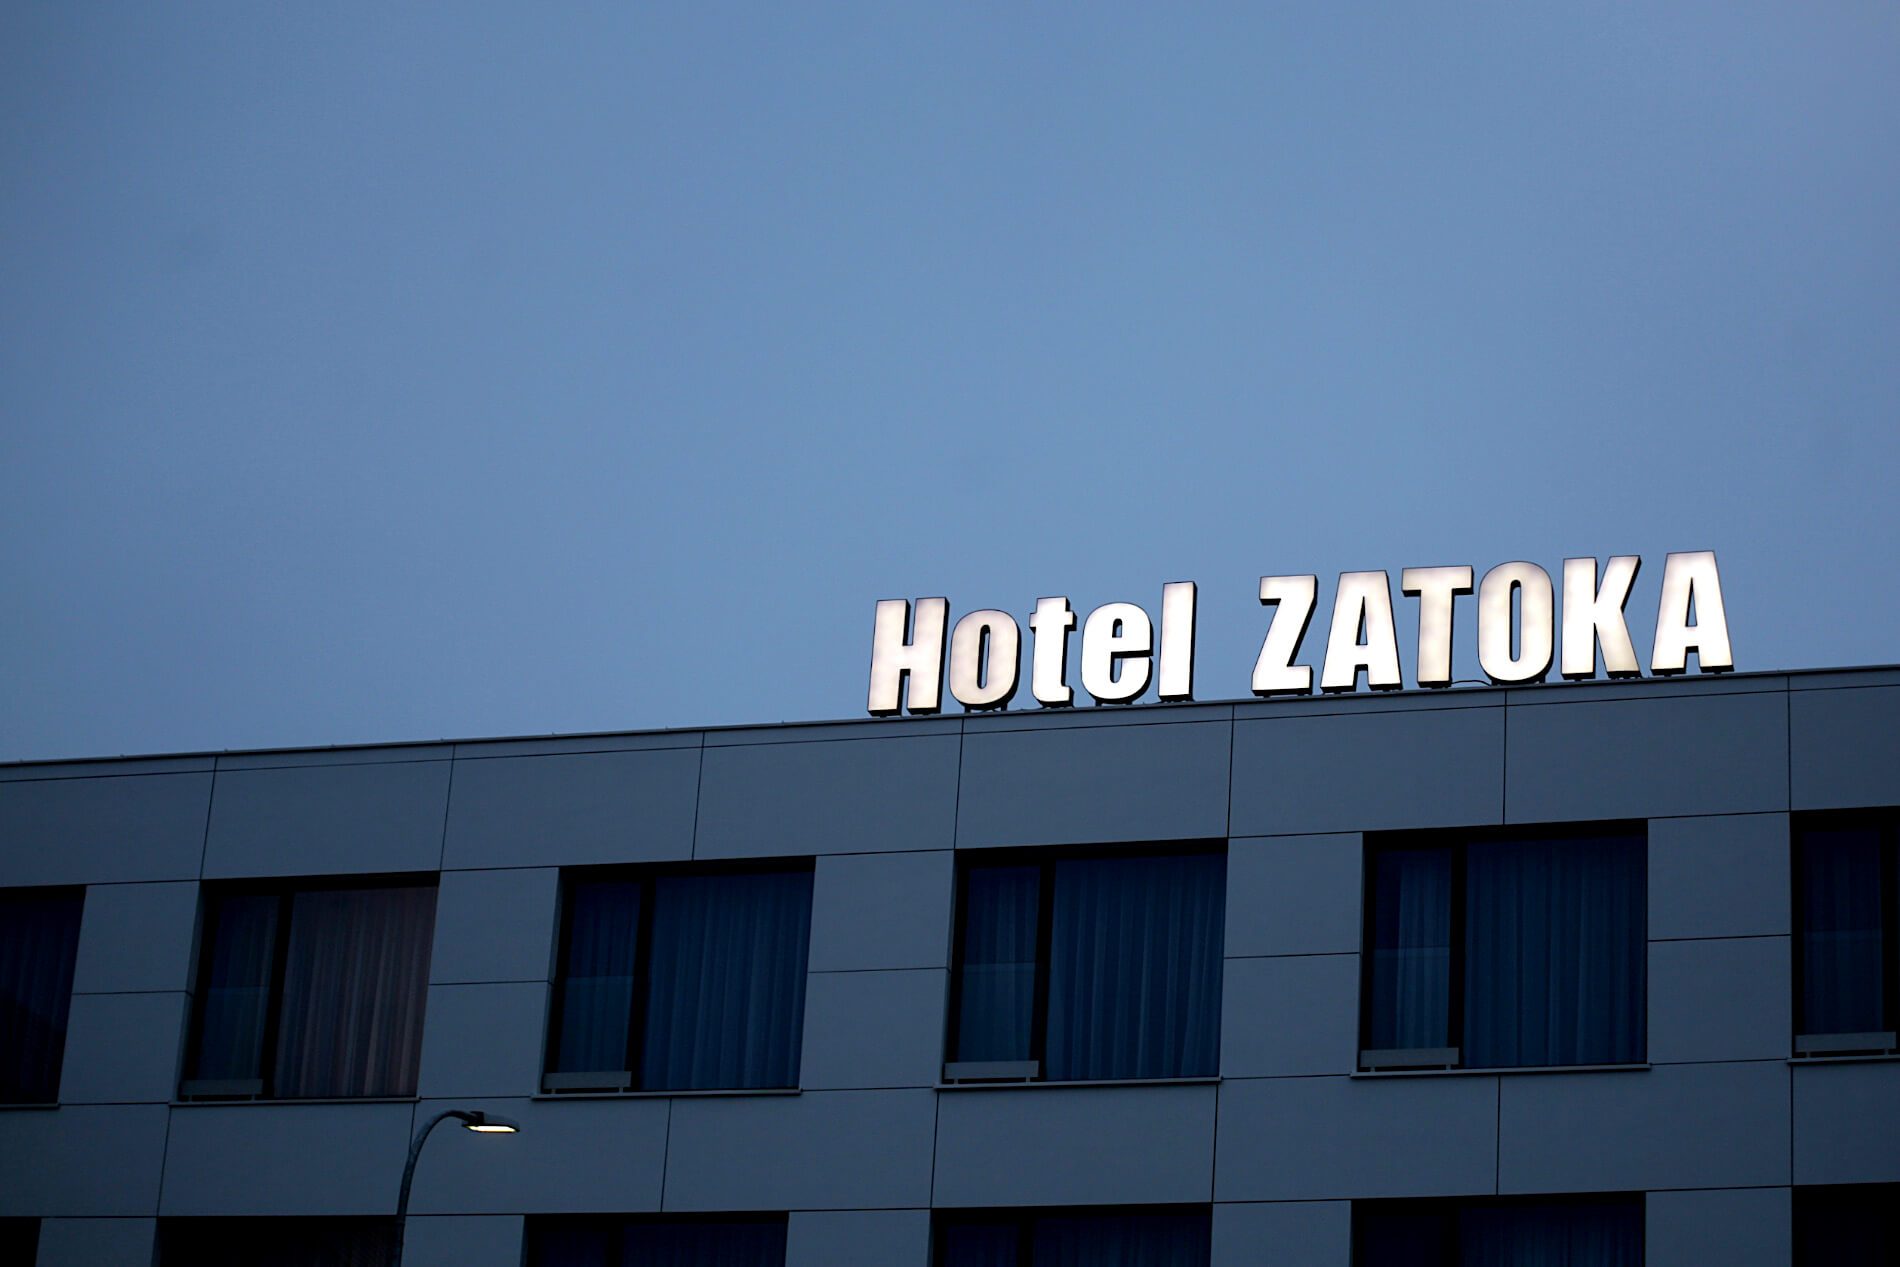 Hotel Zatoka - Hotel Zatoka - przestrzenne litery LED z plexiglasu umieszczone na dachu